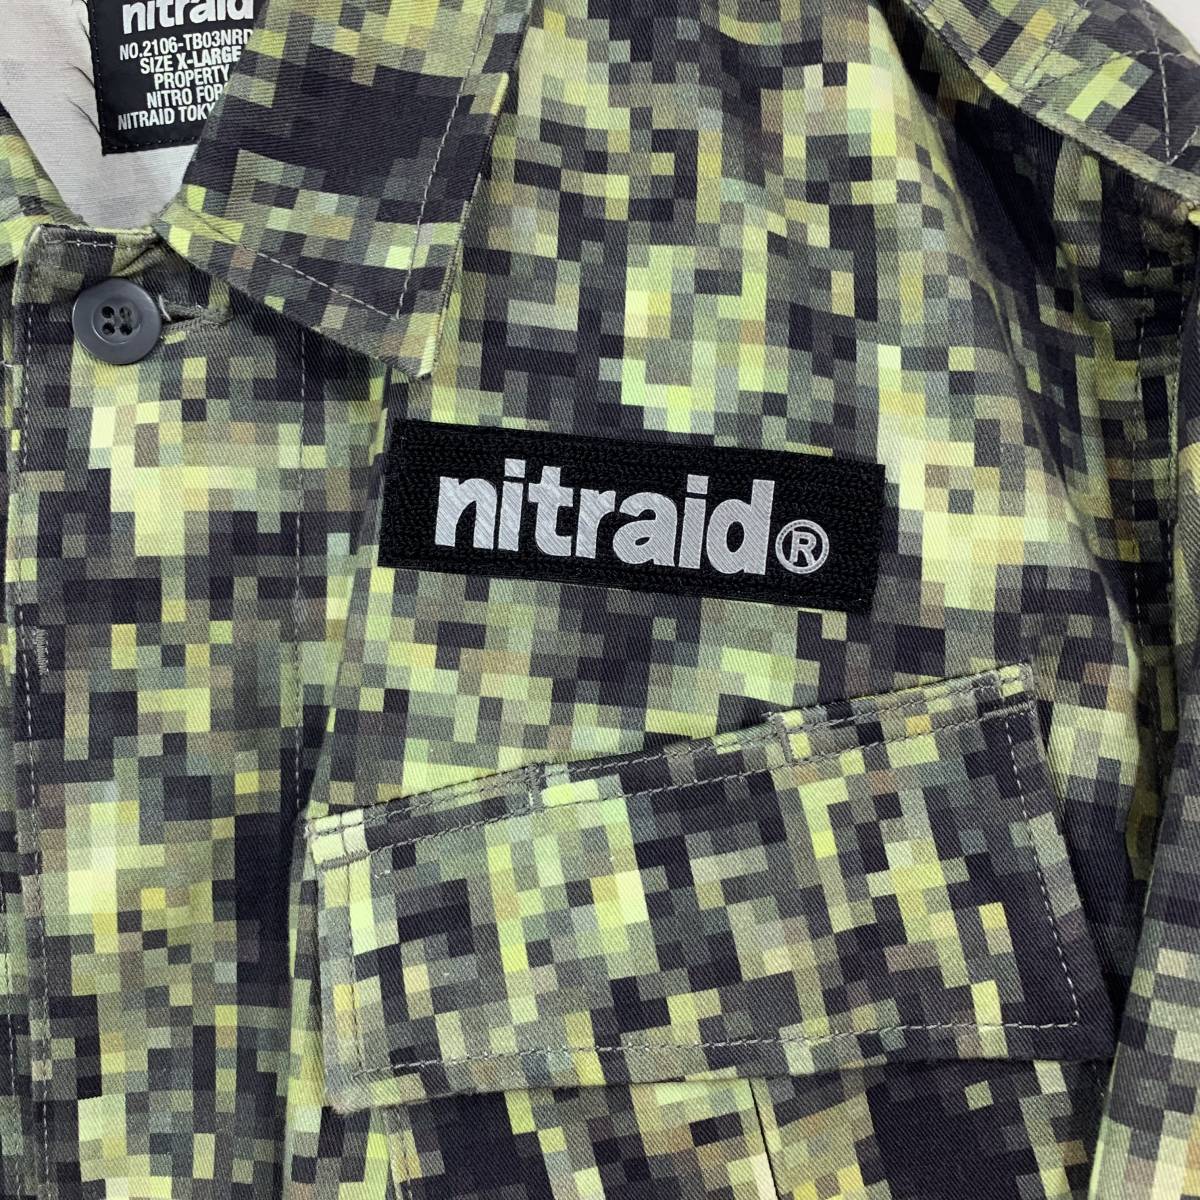 [ ultra rare ]nitraid real we domo The ik green XL military shirt jacket REAL WEED duck total pattern Nitraid 